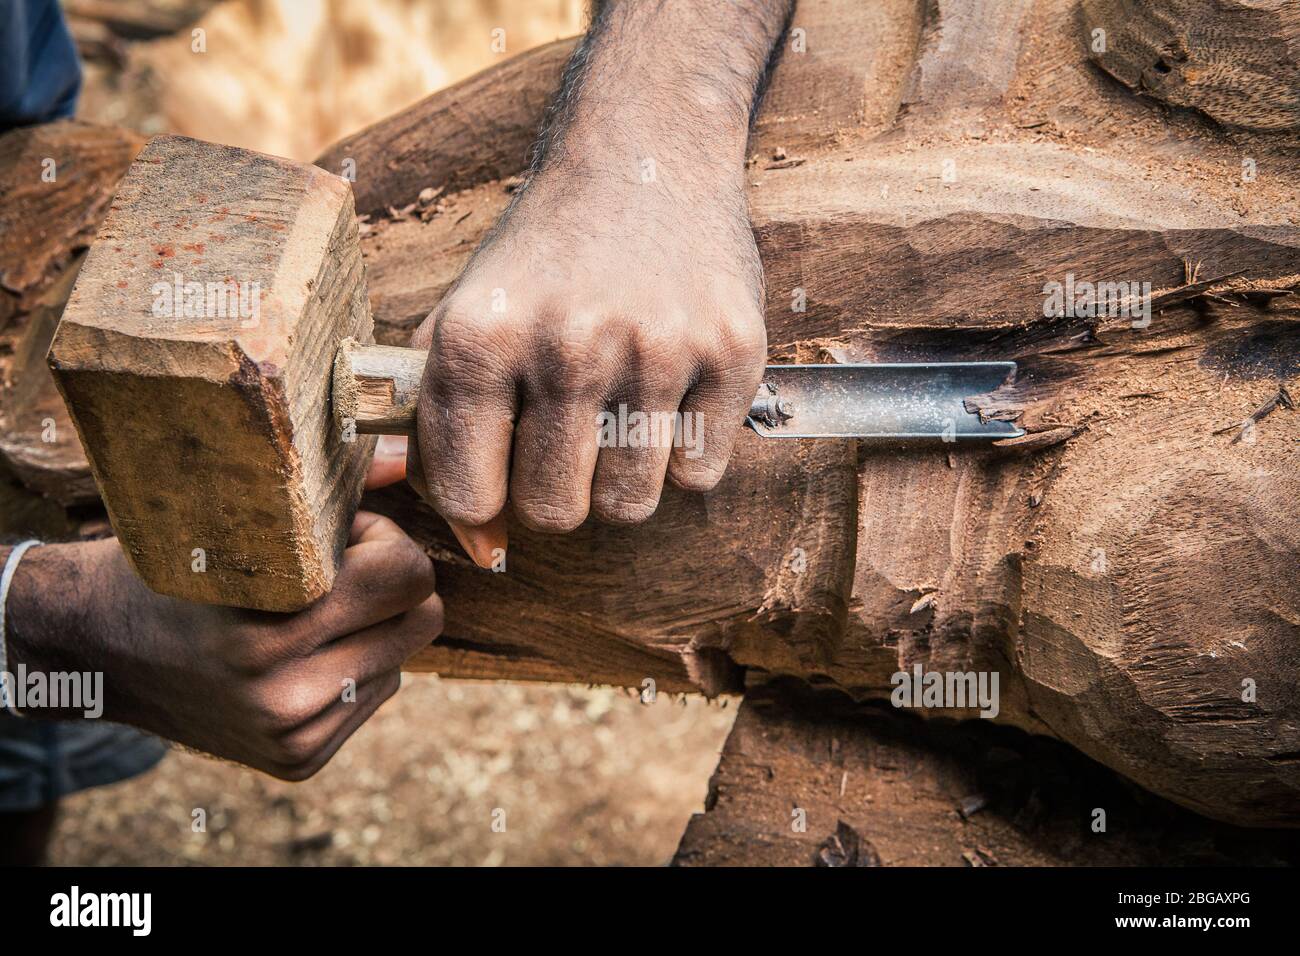 Bois de travail de charpentier. Outils rudimentaires. Deux mains ciseant un morceau de bois. Banque D'Images